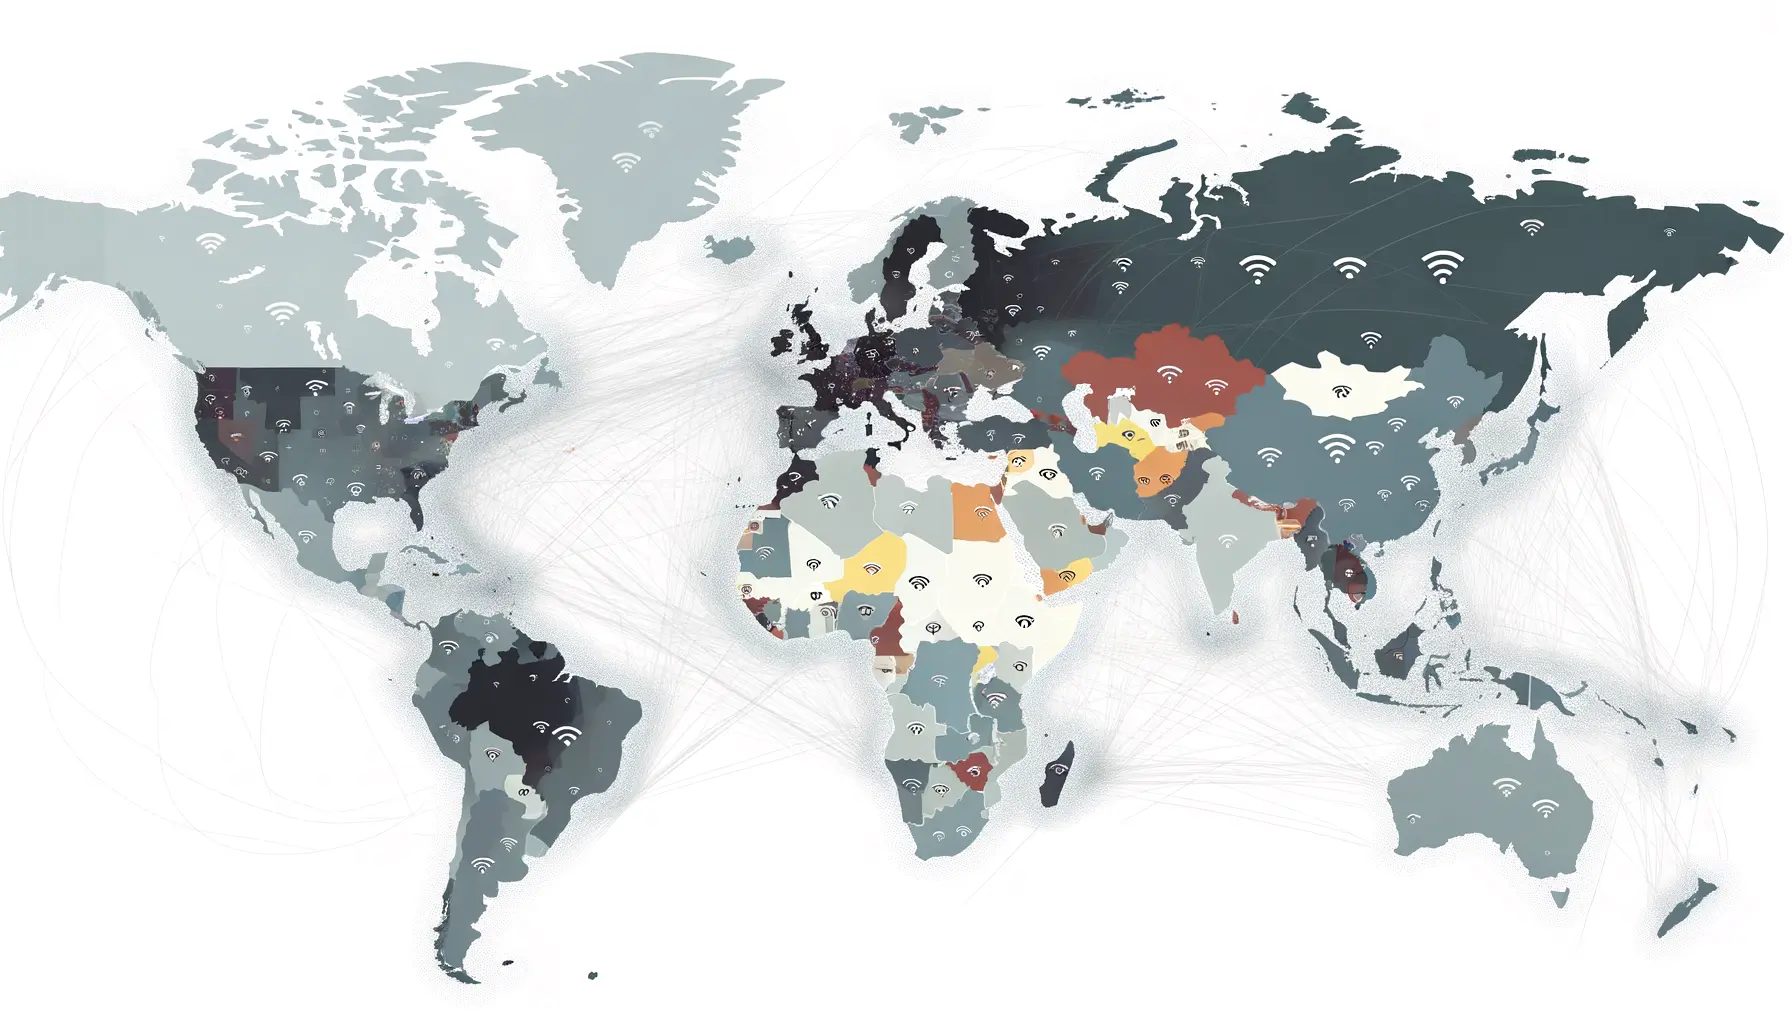 Weltkarte zeigt Unterschiede im Internetzugang verschiedener Regionen